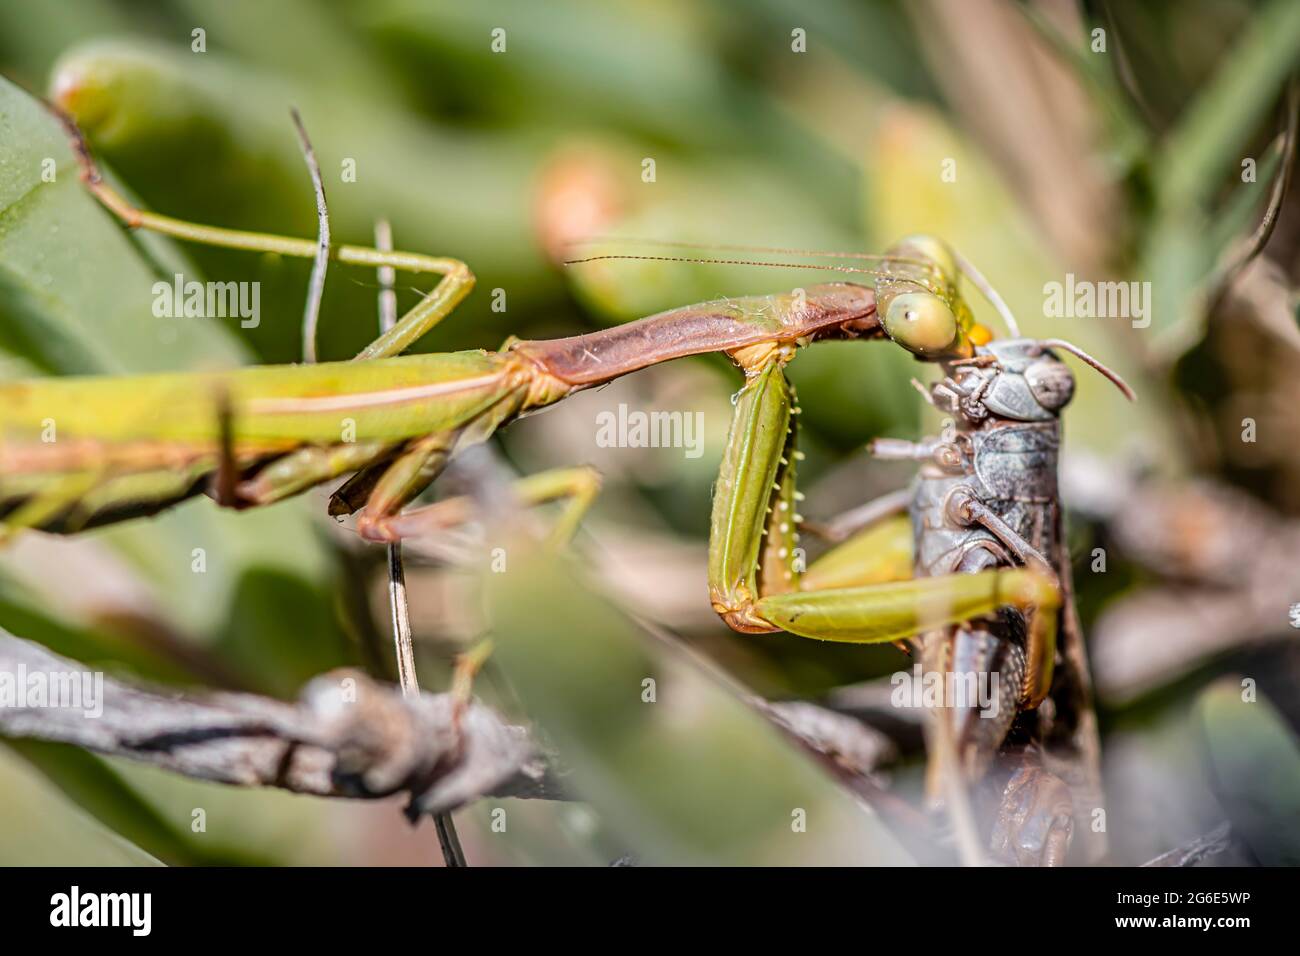 Europäische Mantis (Mantis religiosa), die eine Heuschnecke frisst, Paros, Ägäis, Griechenland Stockfoto